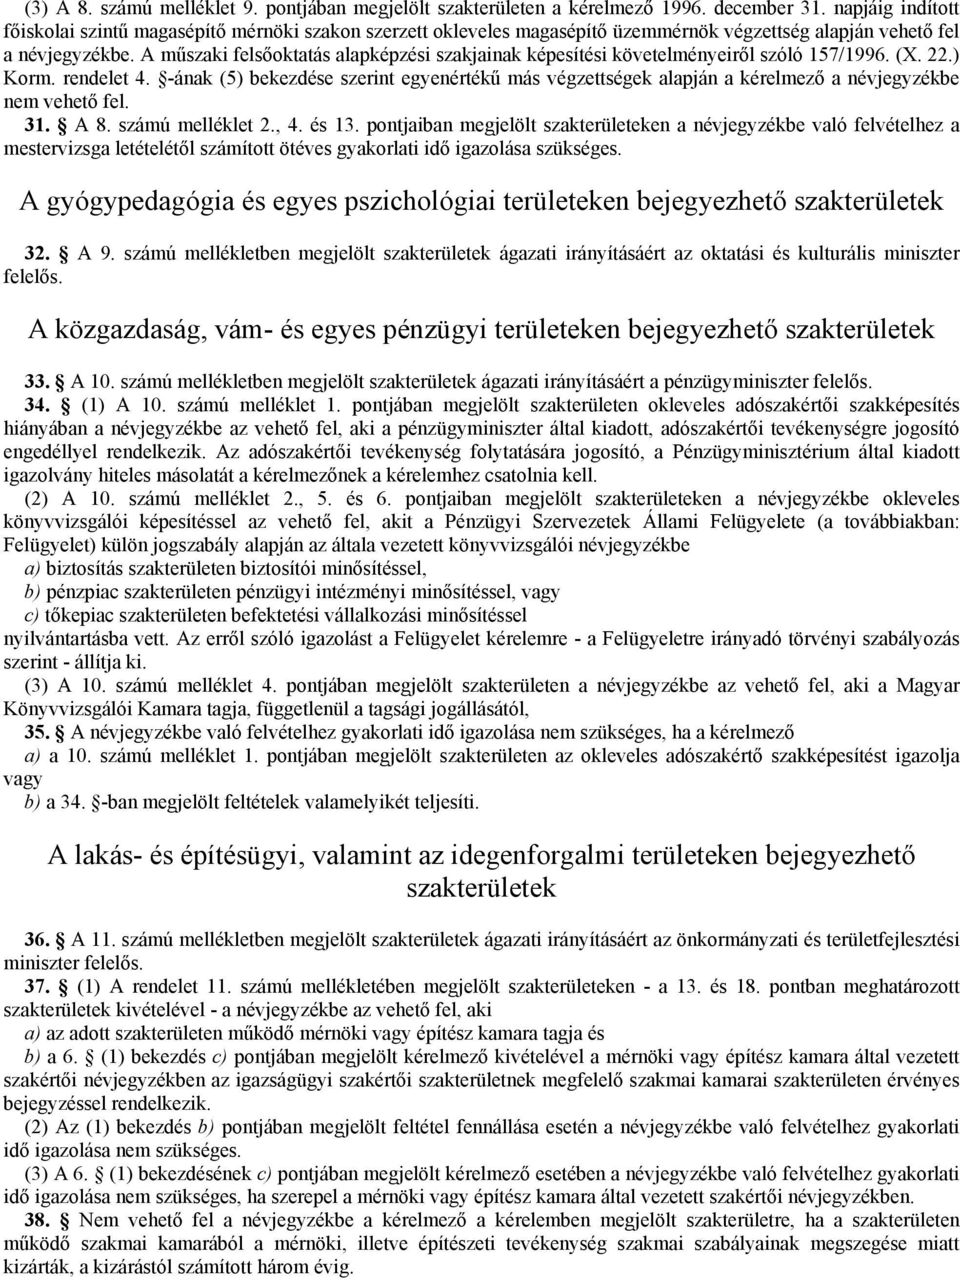 A mőszaki felsıoktatás alapképzési szakjainak képesítési követelményeirıl szóló 157/1996. (X. 22.) Korm. rendelet 4.